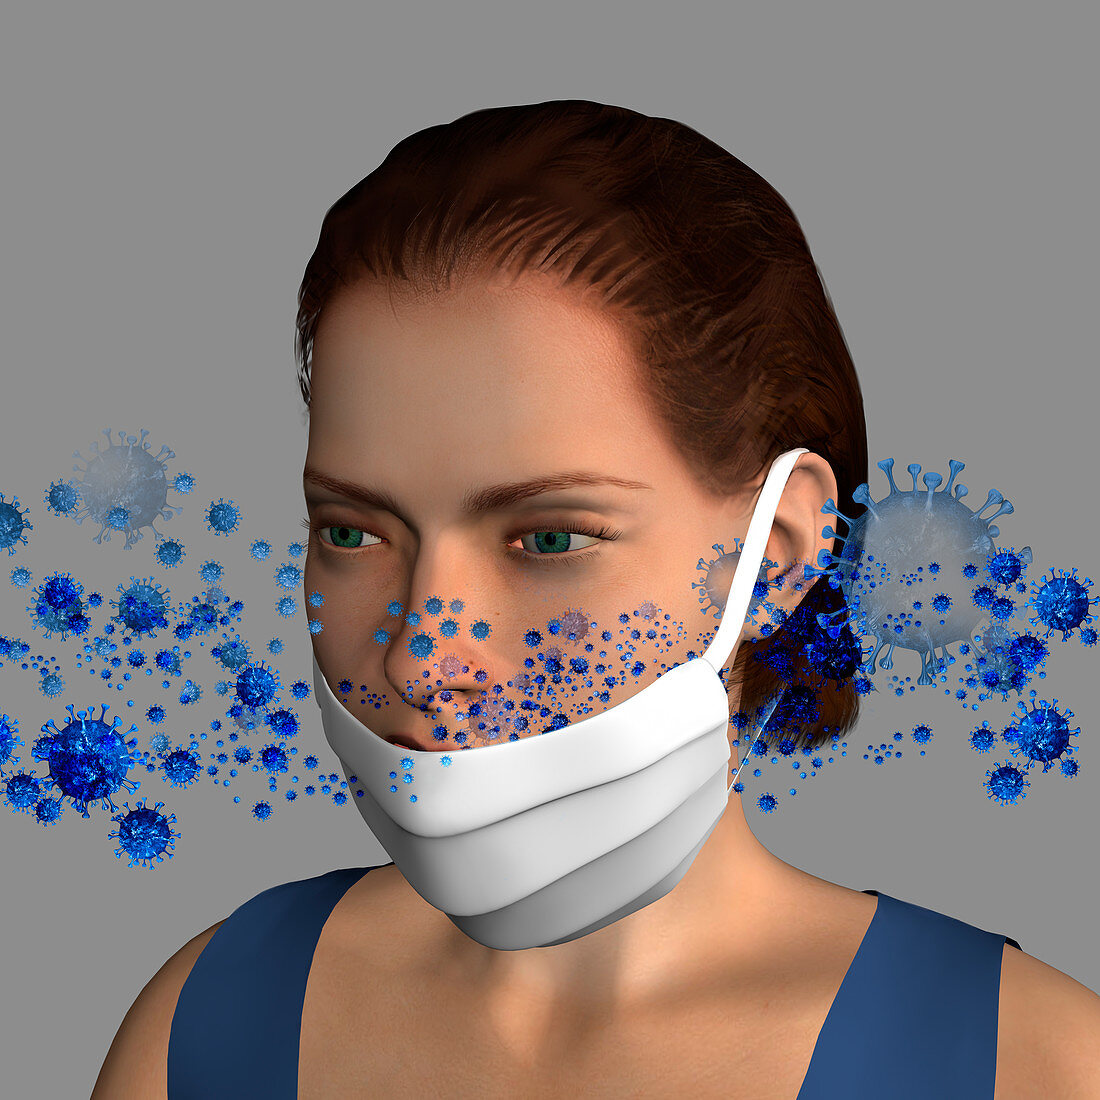 Incorrect face mask use, illustration